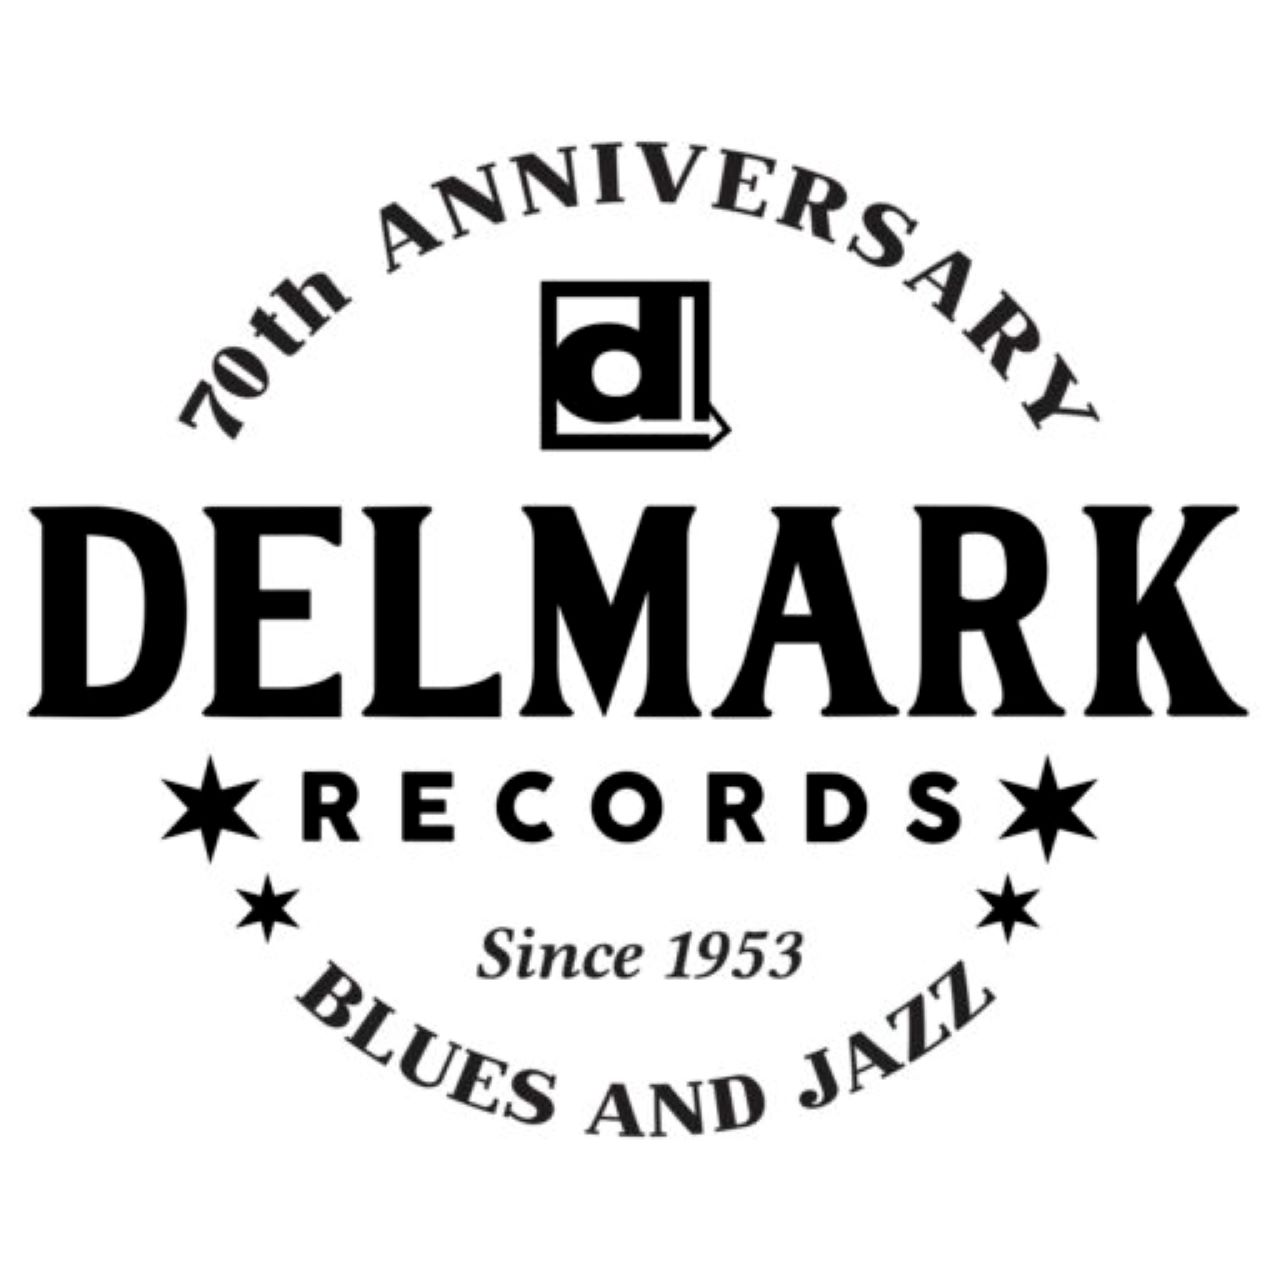 Delmark Records - 70th Anniversary news